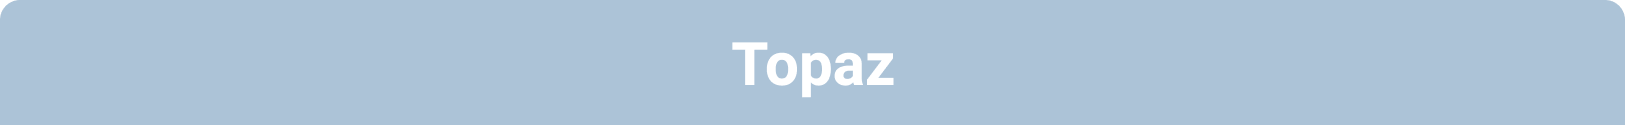 Topaz Onboarding Package